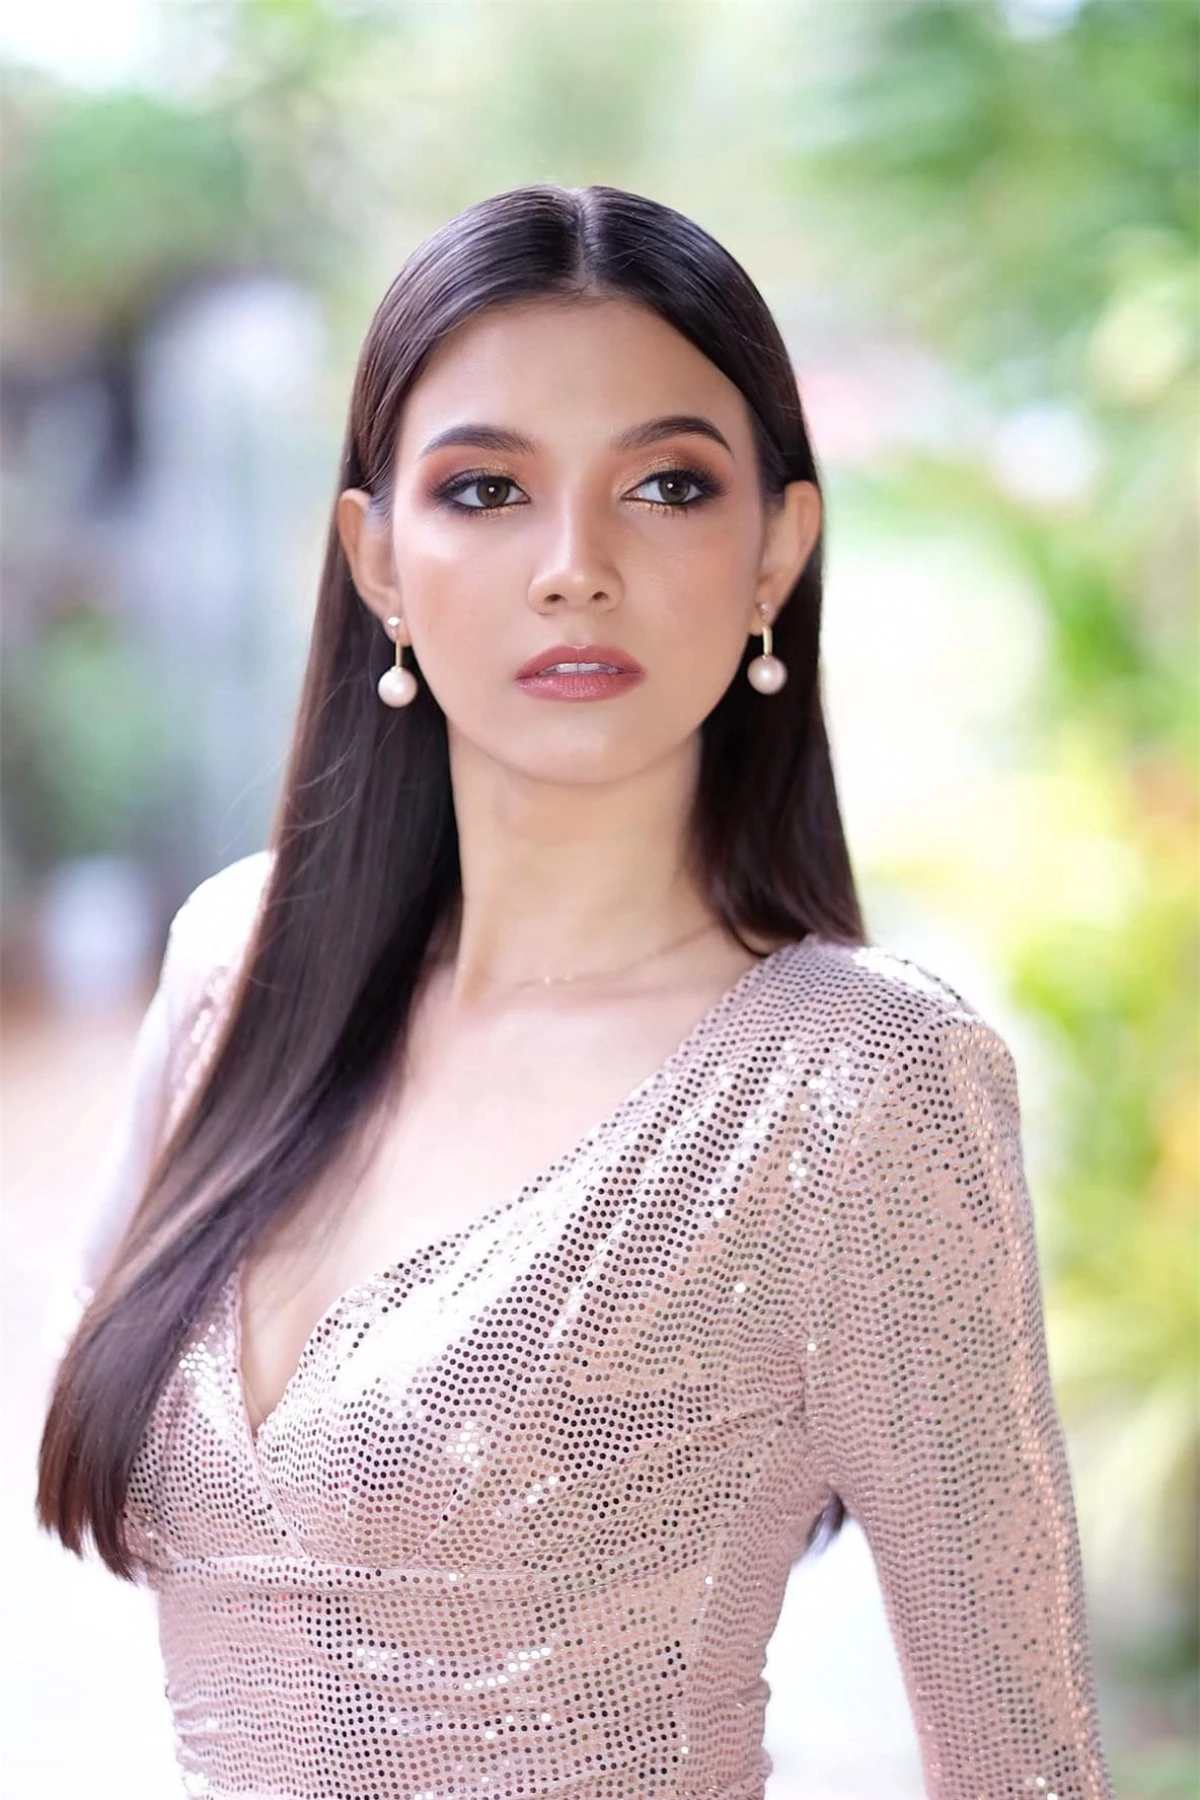 Người đẹp 27 tuổi là đại sứ thương hiệu cho một số hãng mỹ phẩm, điện thoại. Bên cạnh đó, cô đang học để lấy bằng thạc sĩ của Đại học Dhurakij Pundit ở Bangkok, Thái Lan.